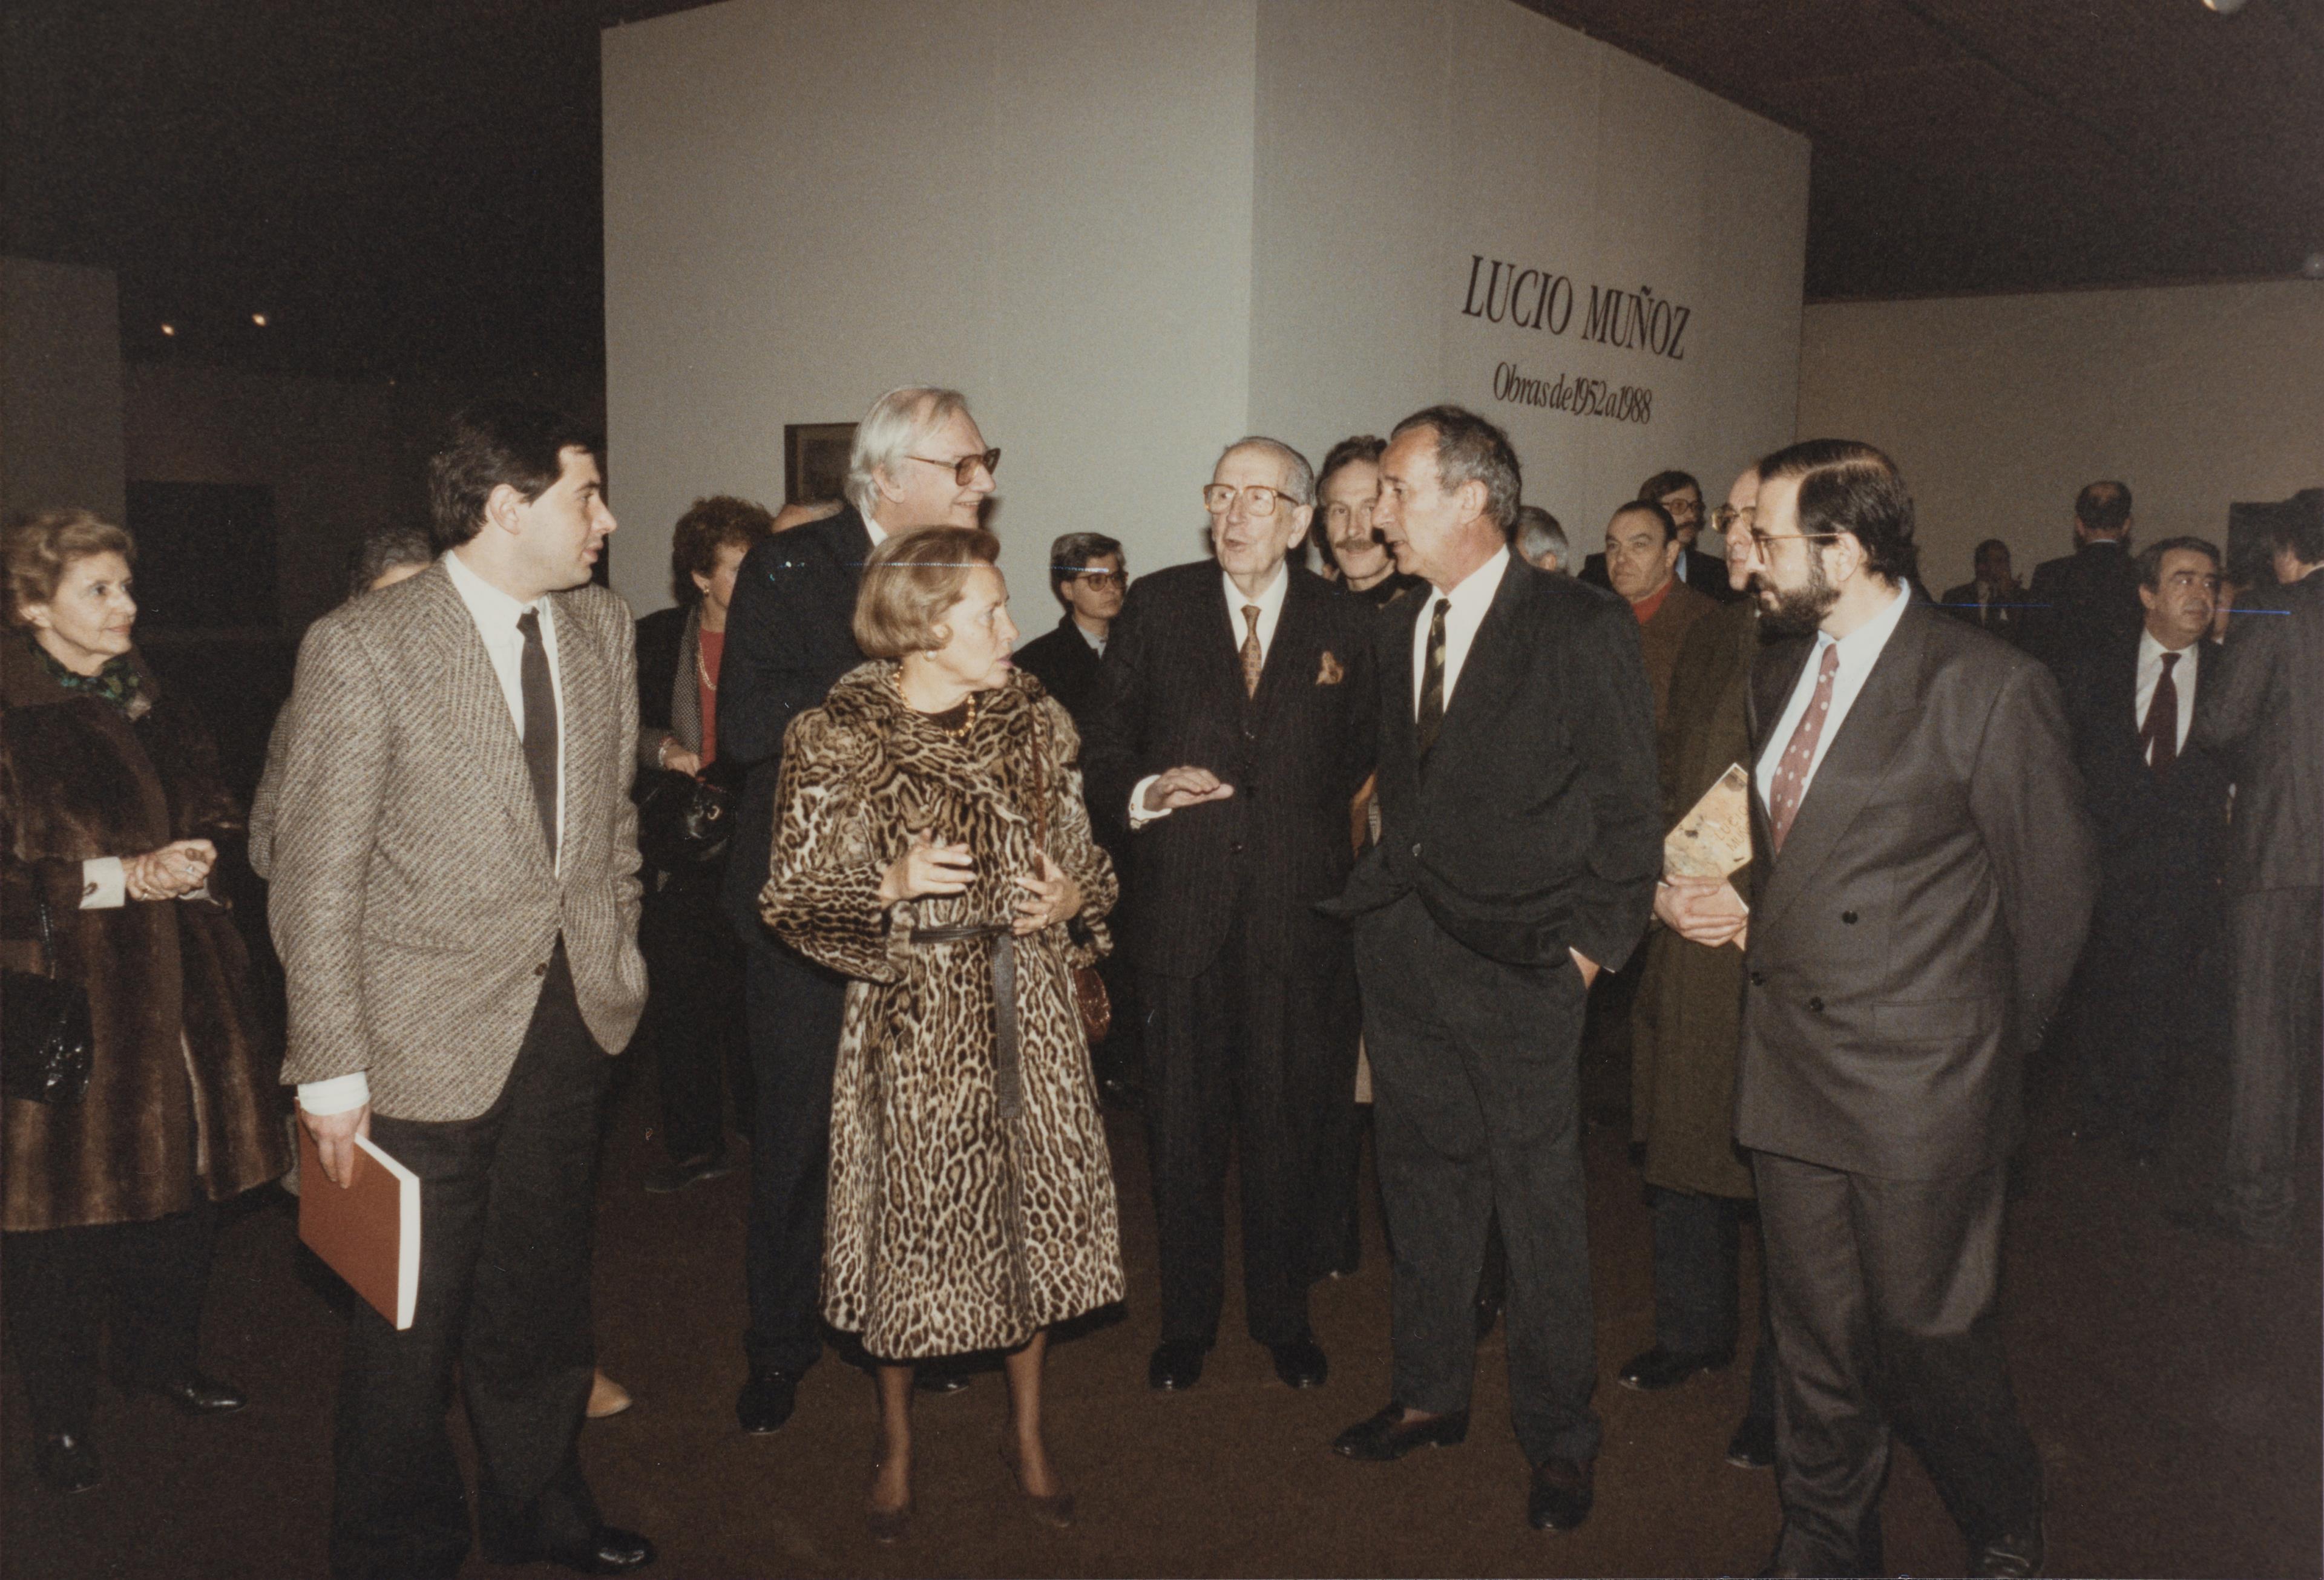 José Sommer Ribeiro, Maria Barroso, José de Azeredo Perdigão e Lucio Muñoz